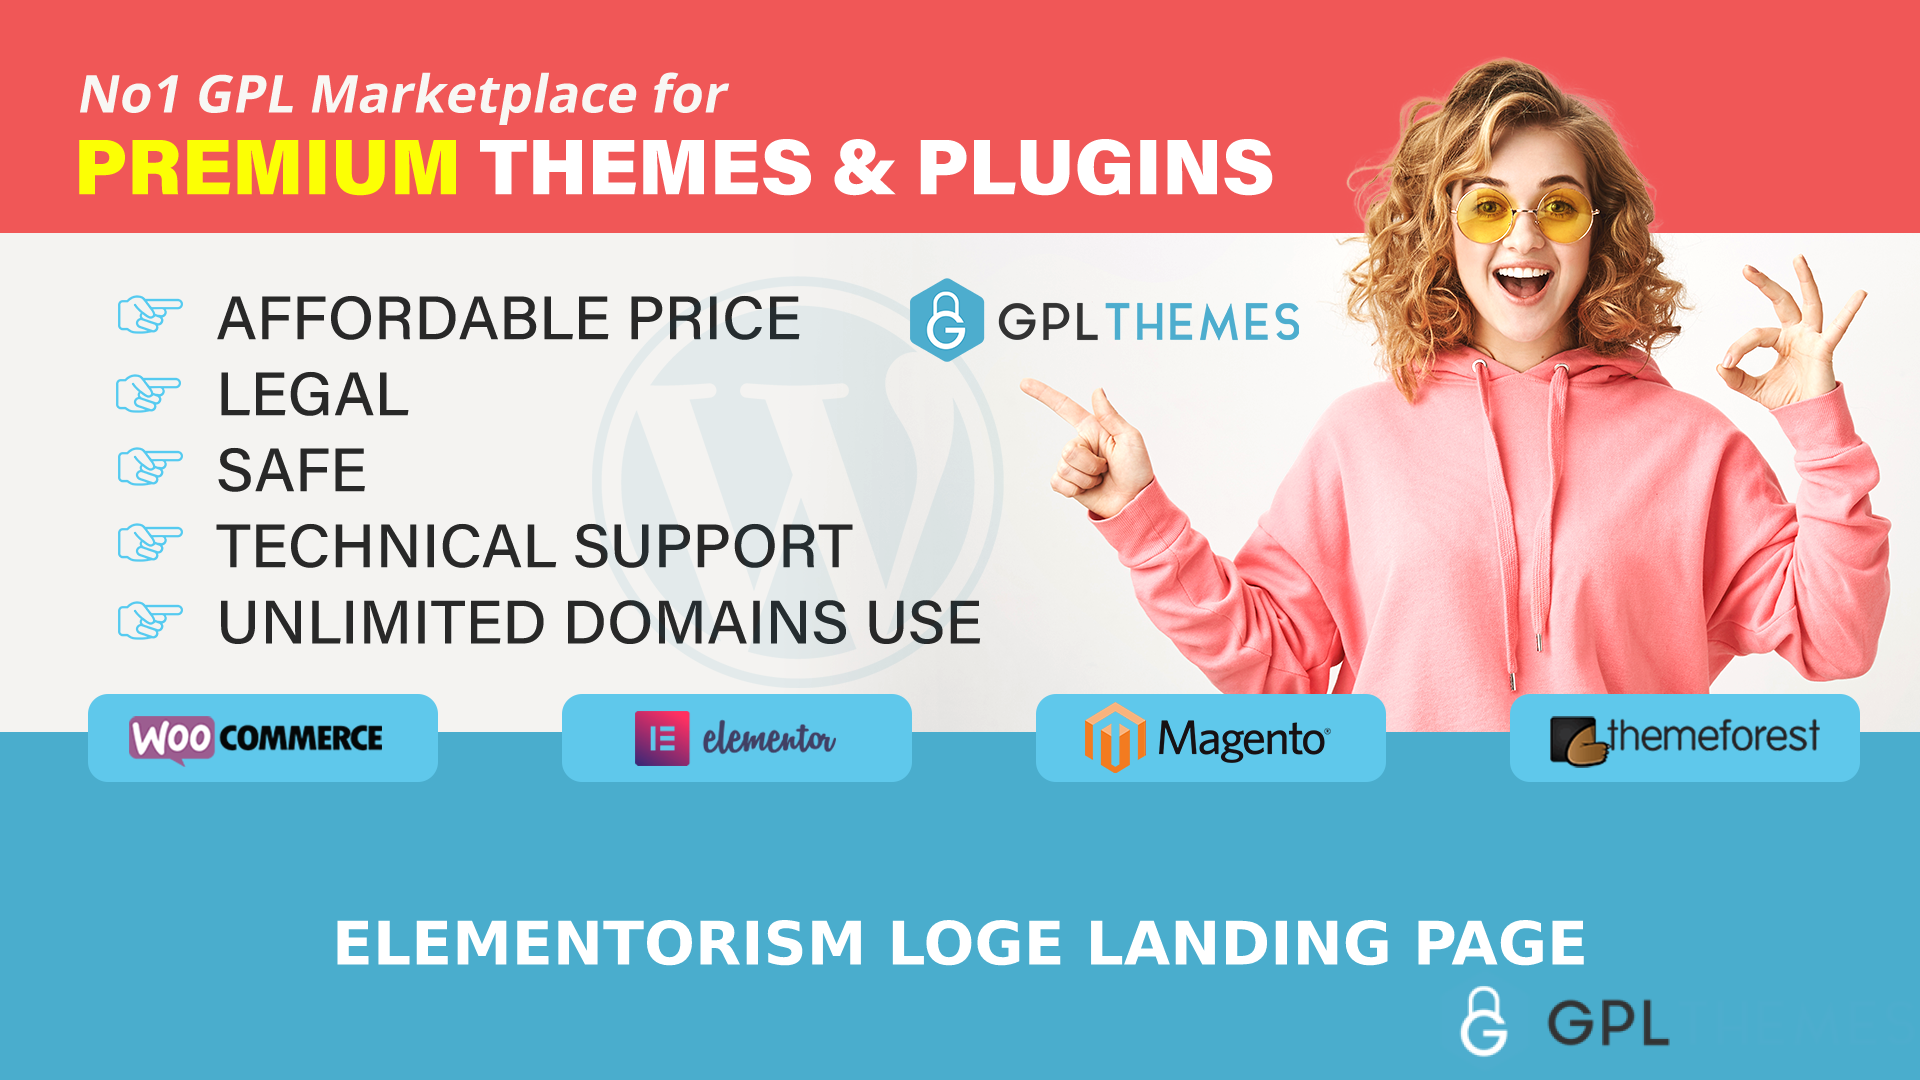 Elementorism Loge Landing Page